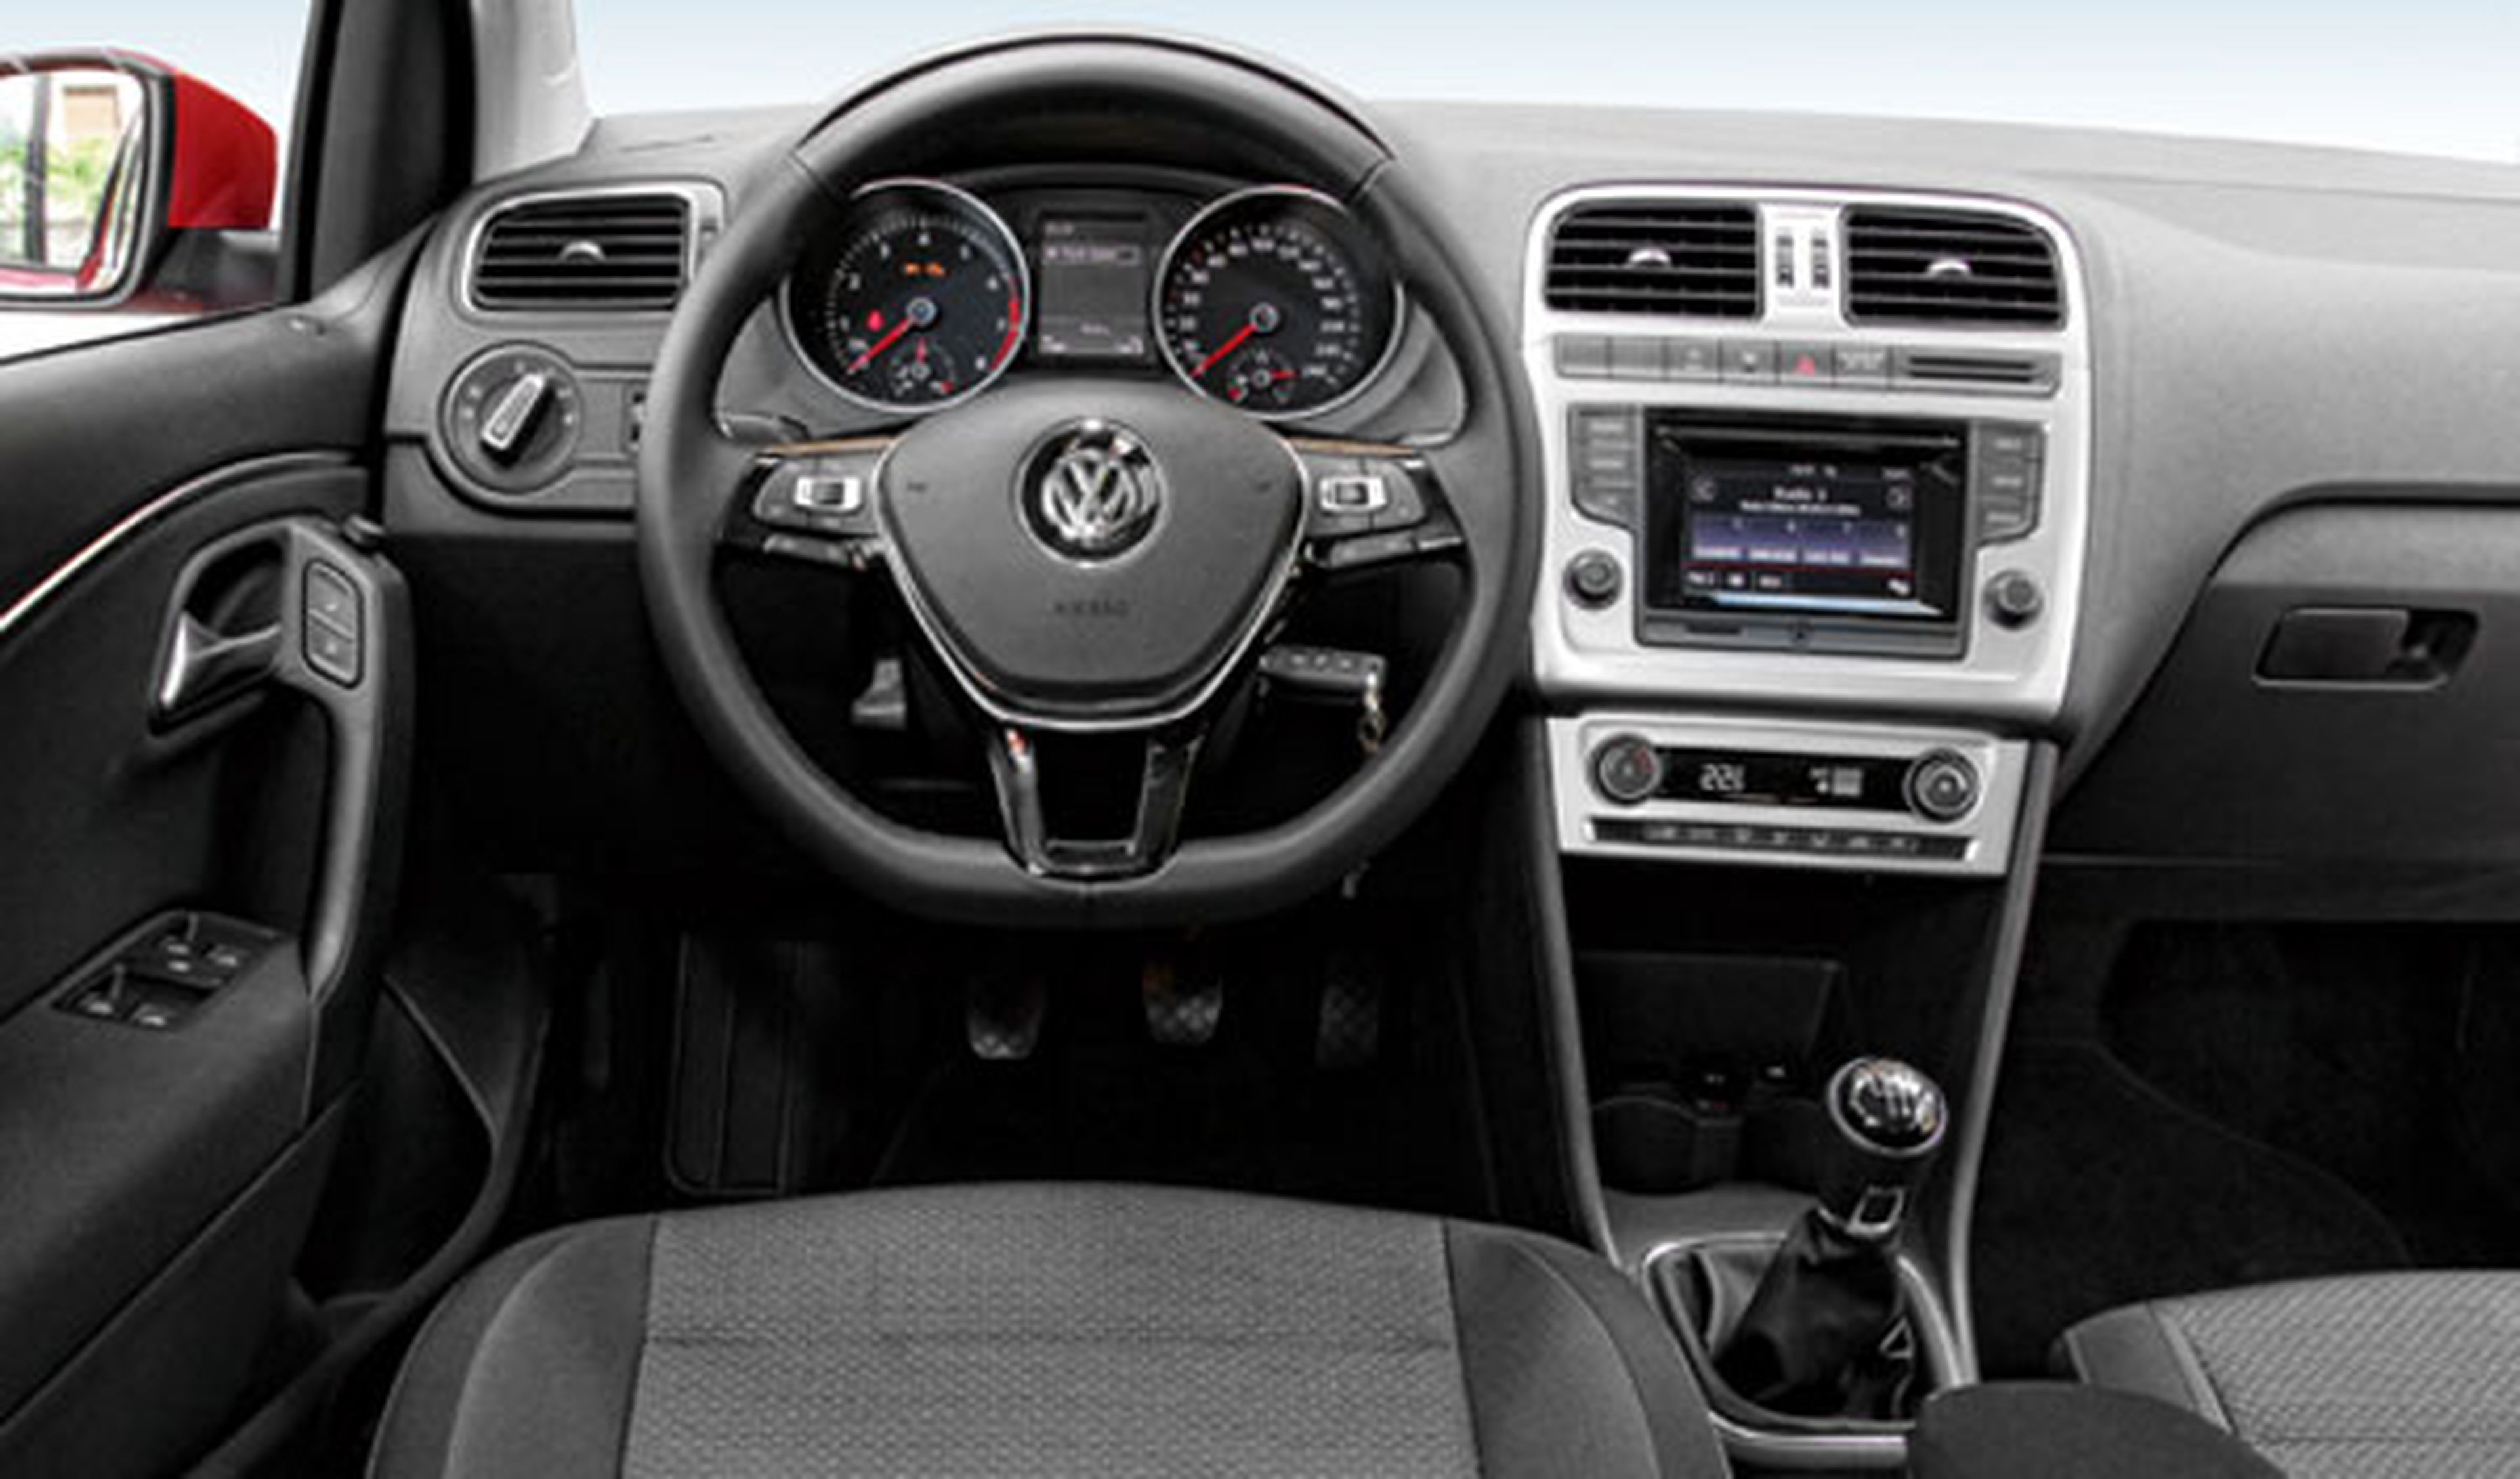 Volkswagen incorporará puertos USB en sus nuevos modelos